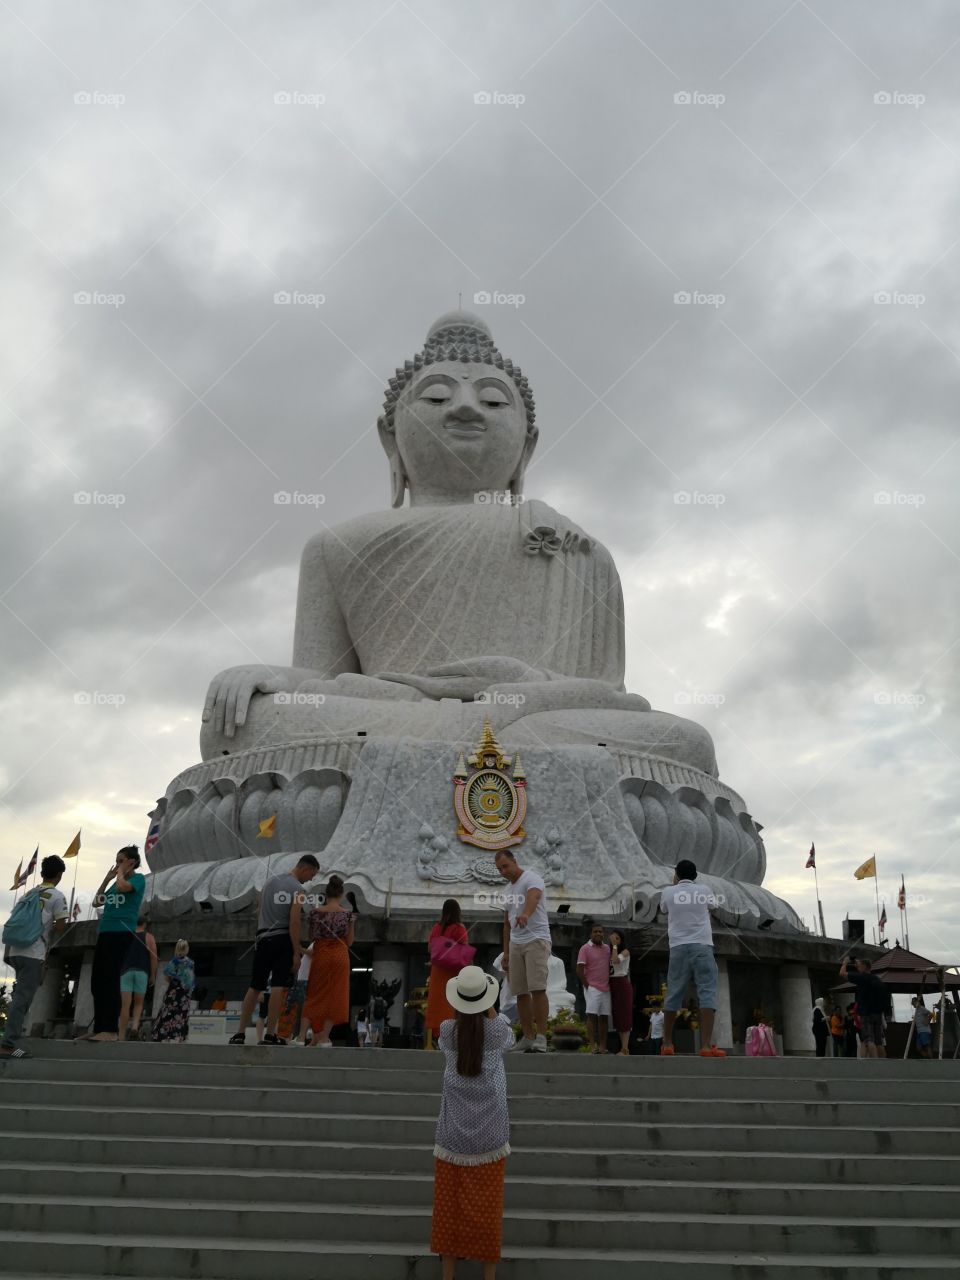 Big buddha statue in Phuket..